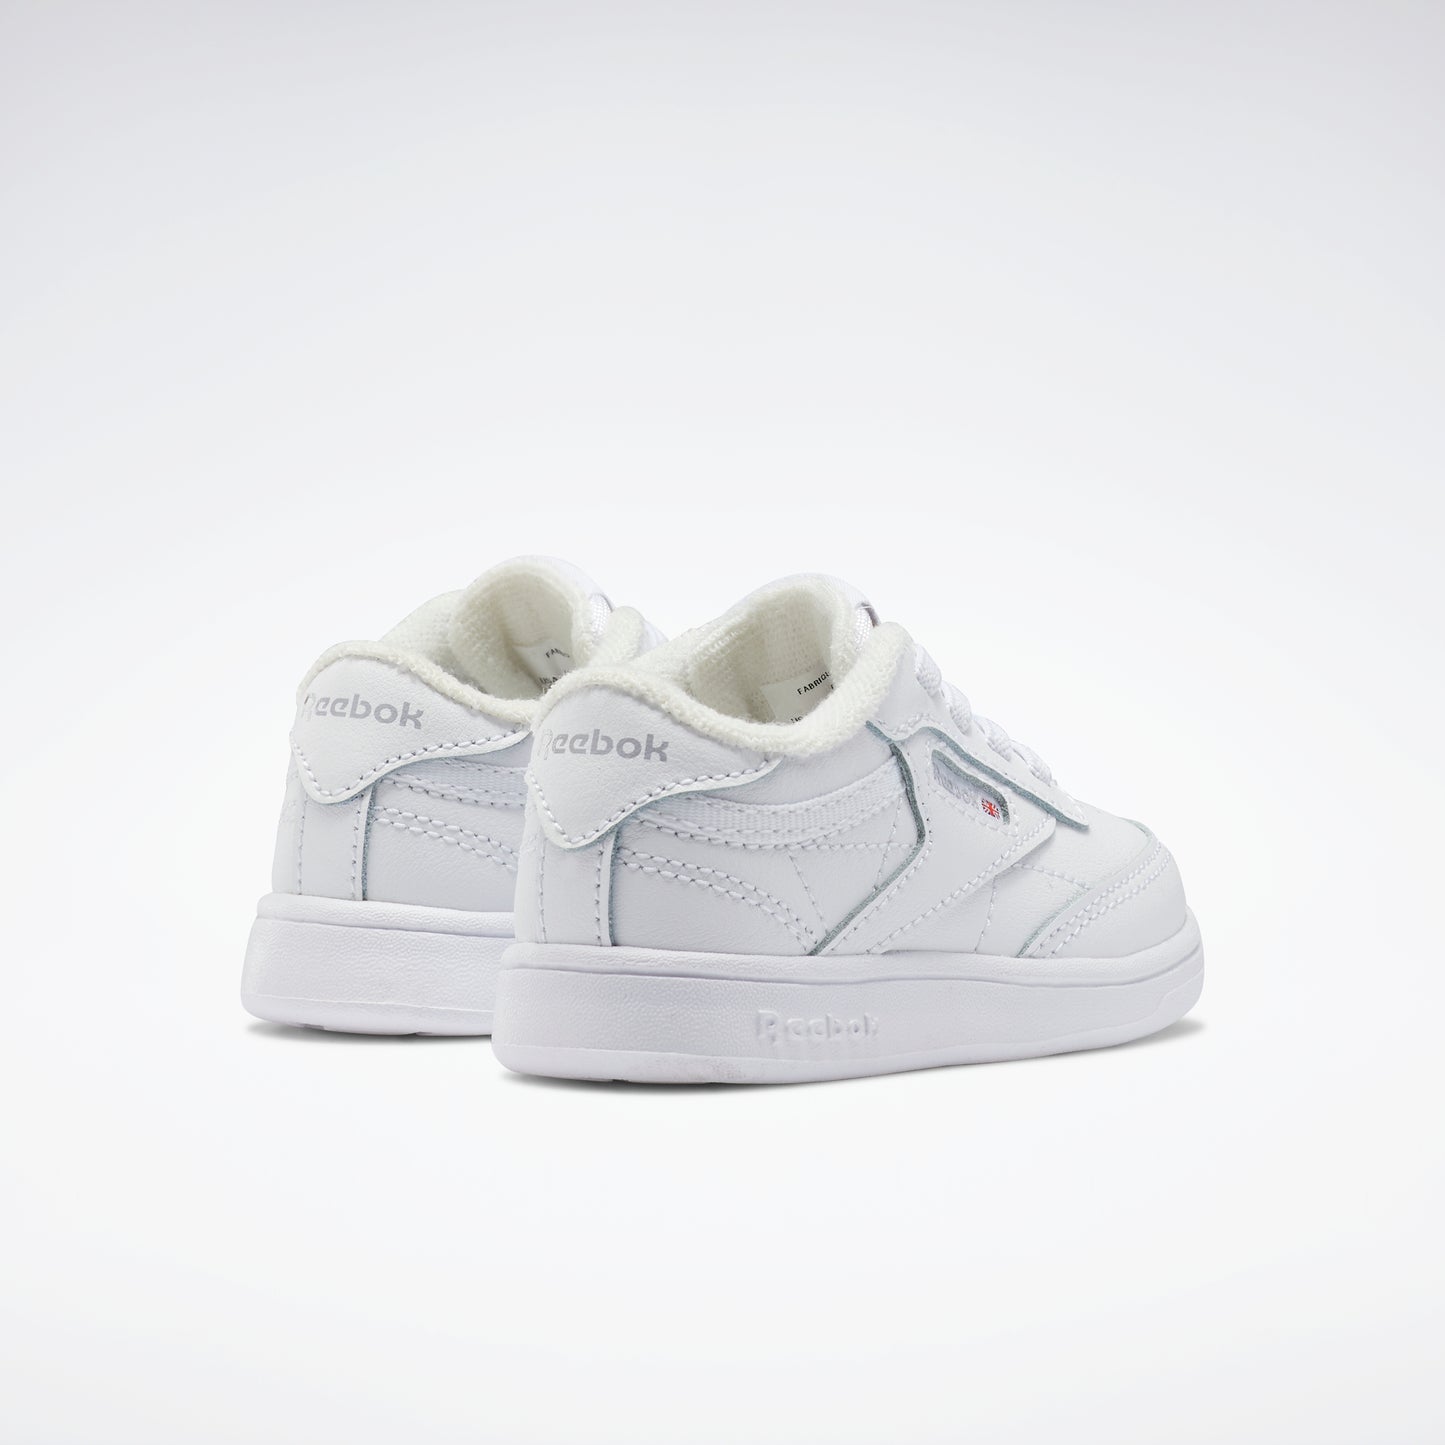 Club C Shoes - Toddler White/White/White